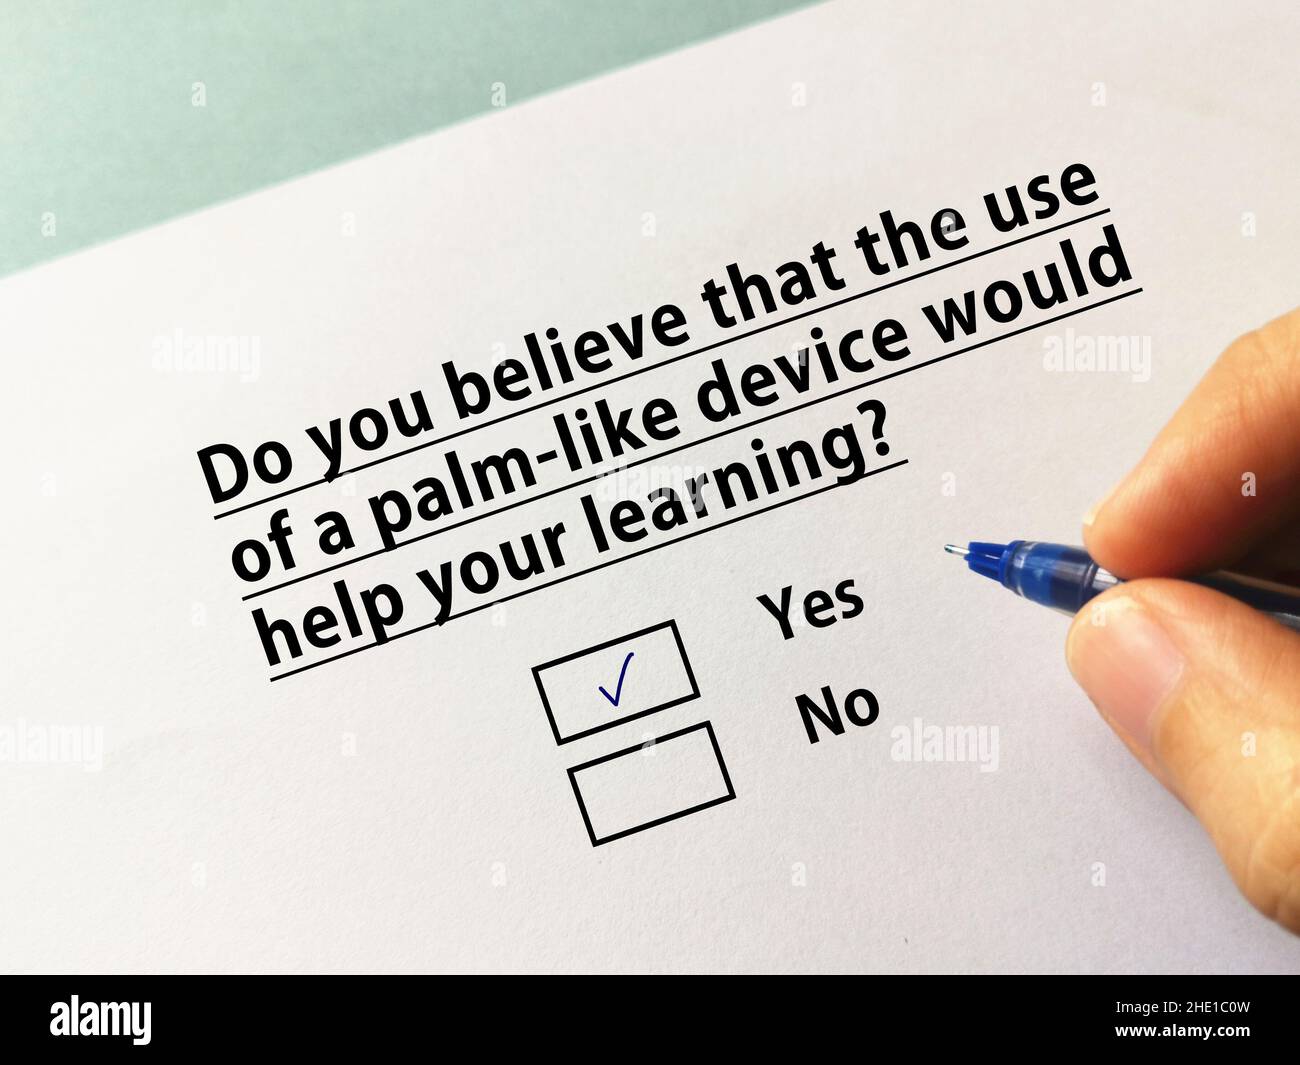 Une personne répond à une question sur l'apprentissage en ligne.La personne croit que l'utilisation d'un appareil de type paume l'aiderait à apprendre. Banque D'Images